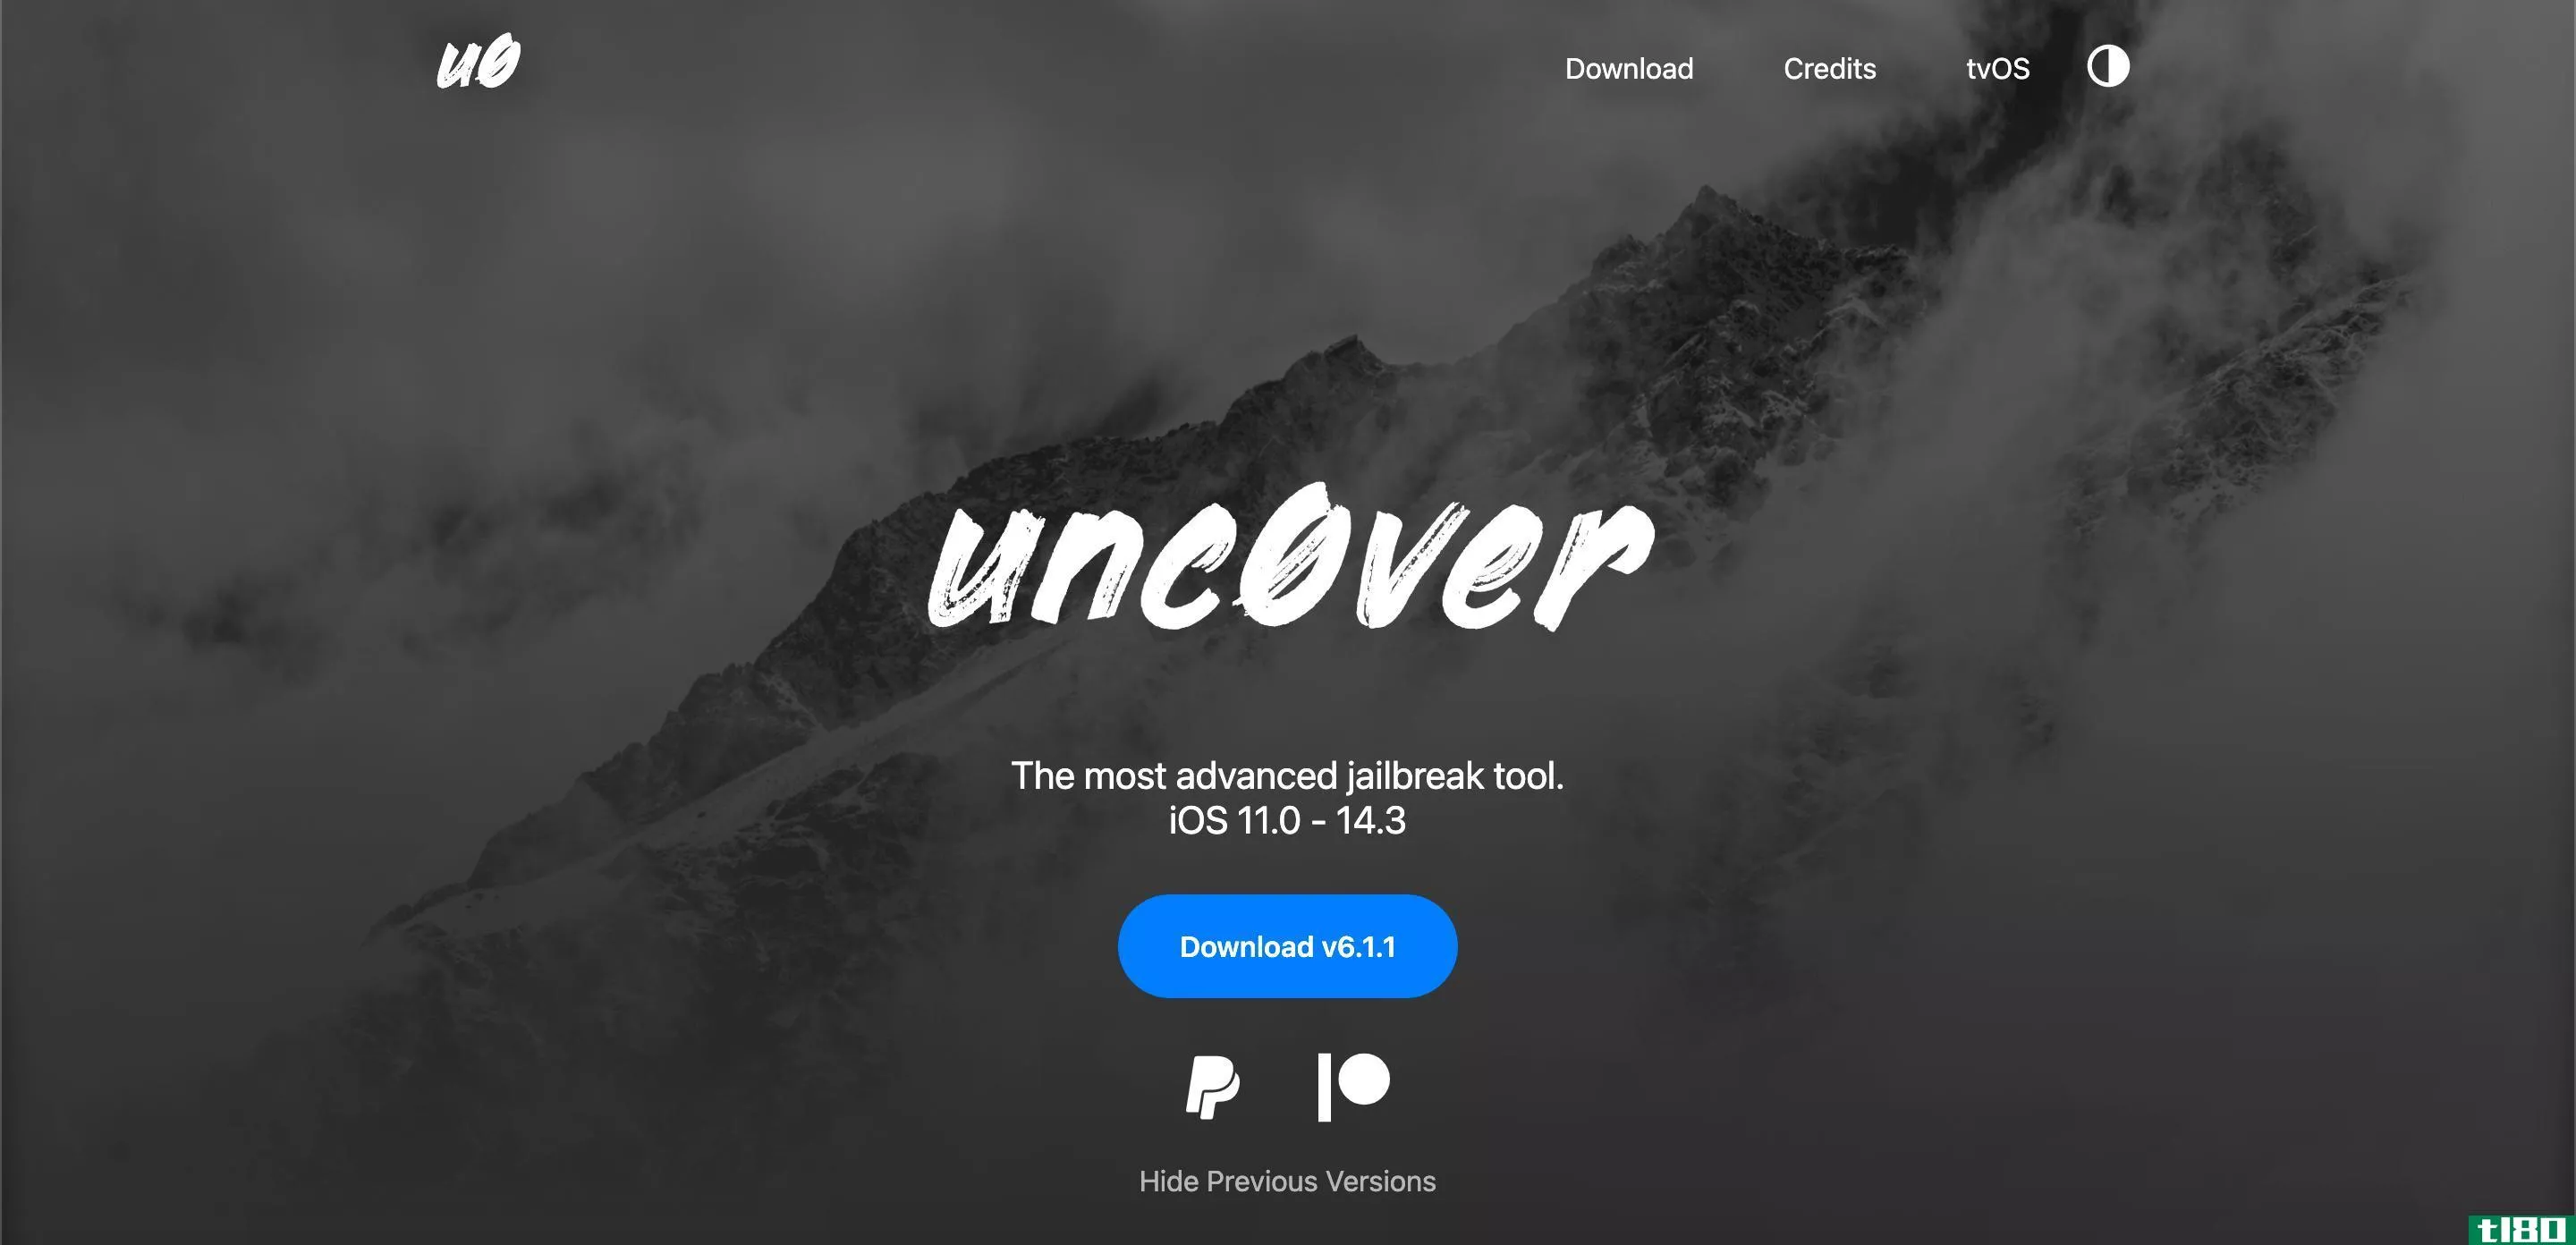 Screenshot of the Unc0ver website homepage